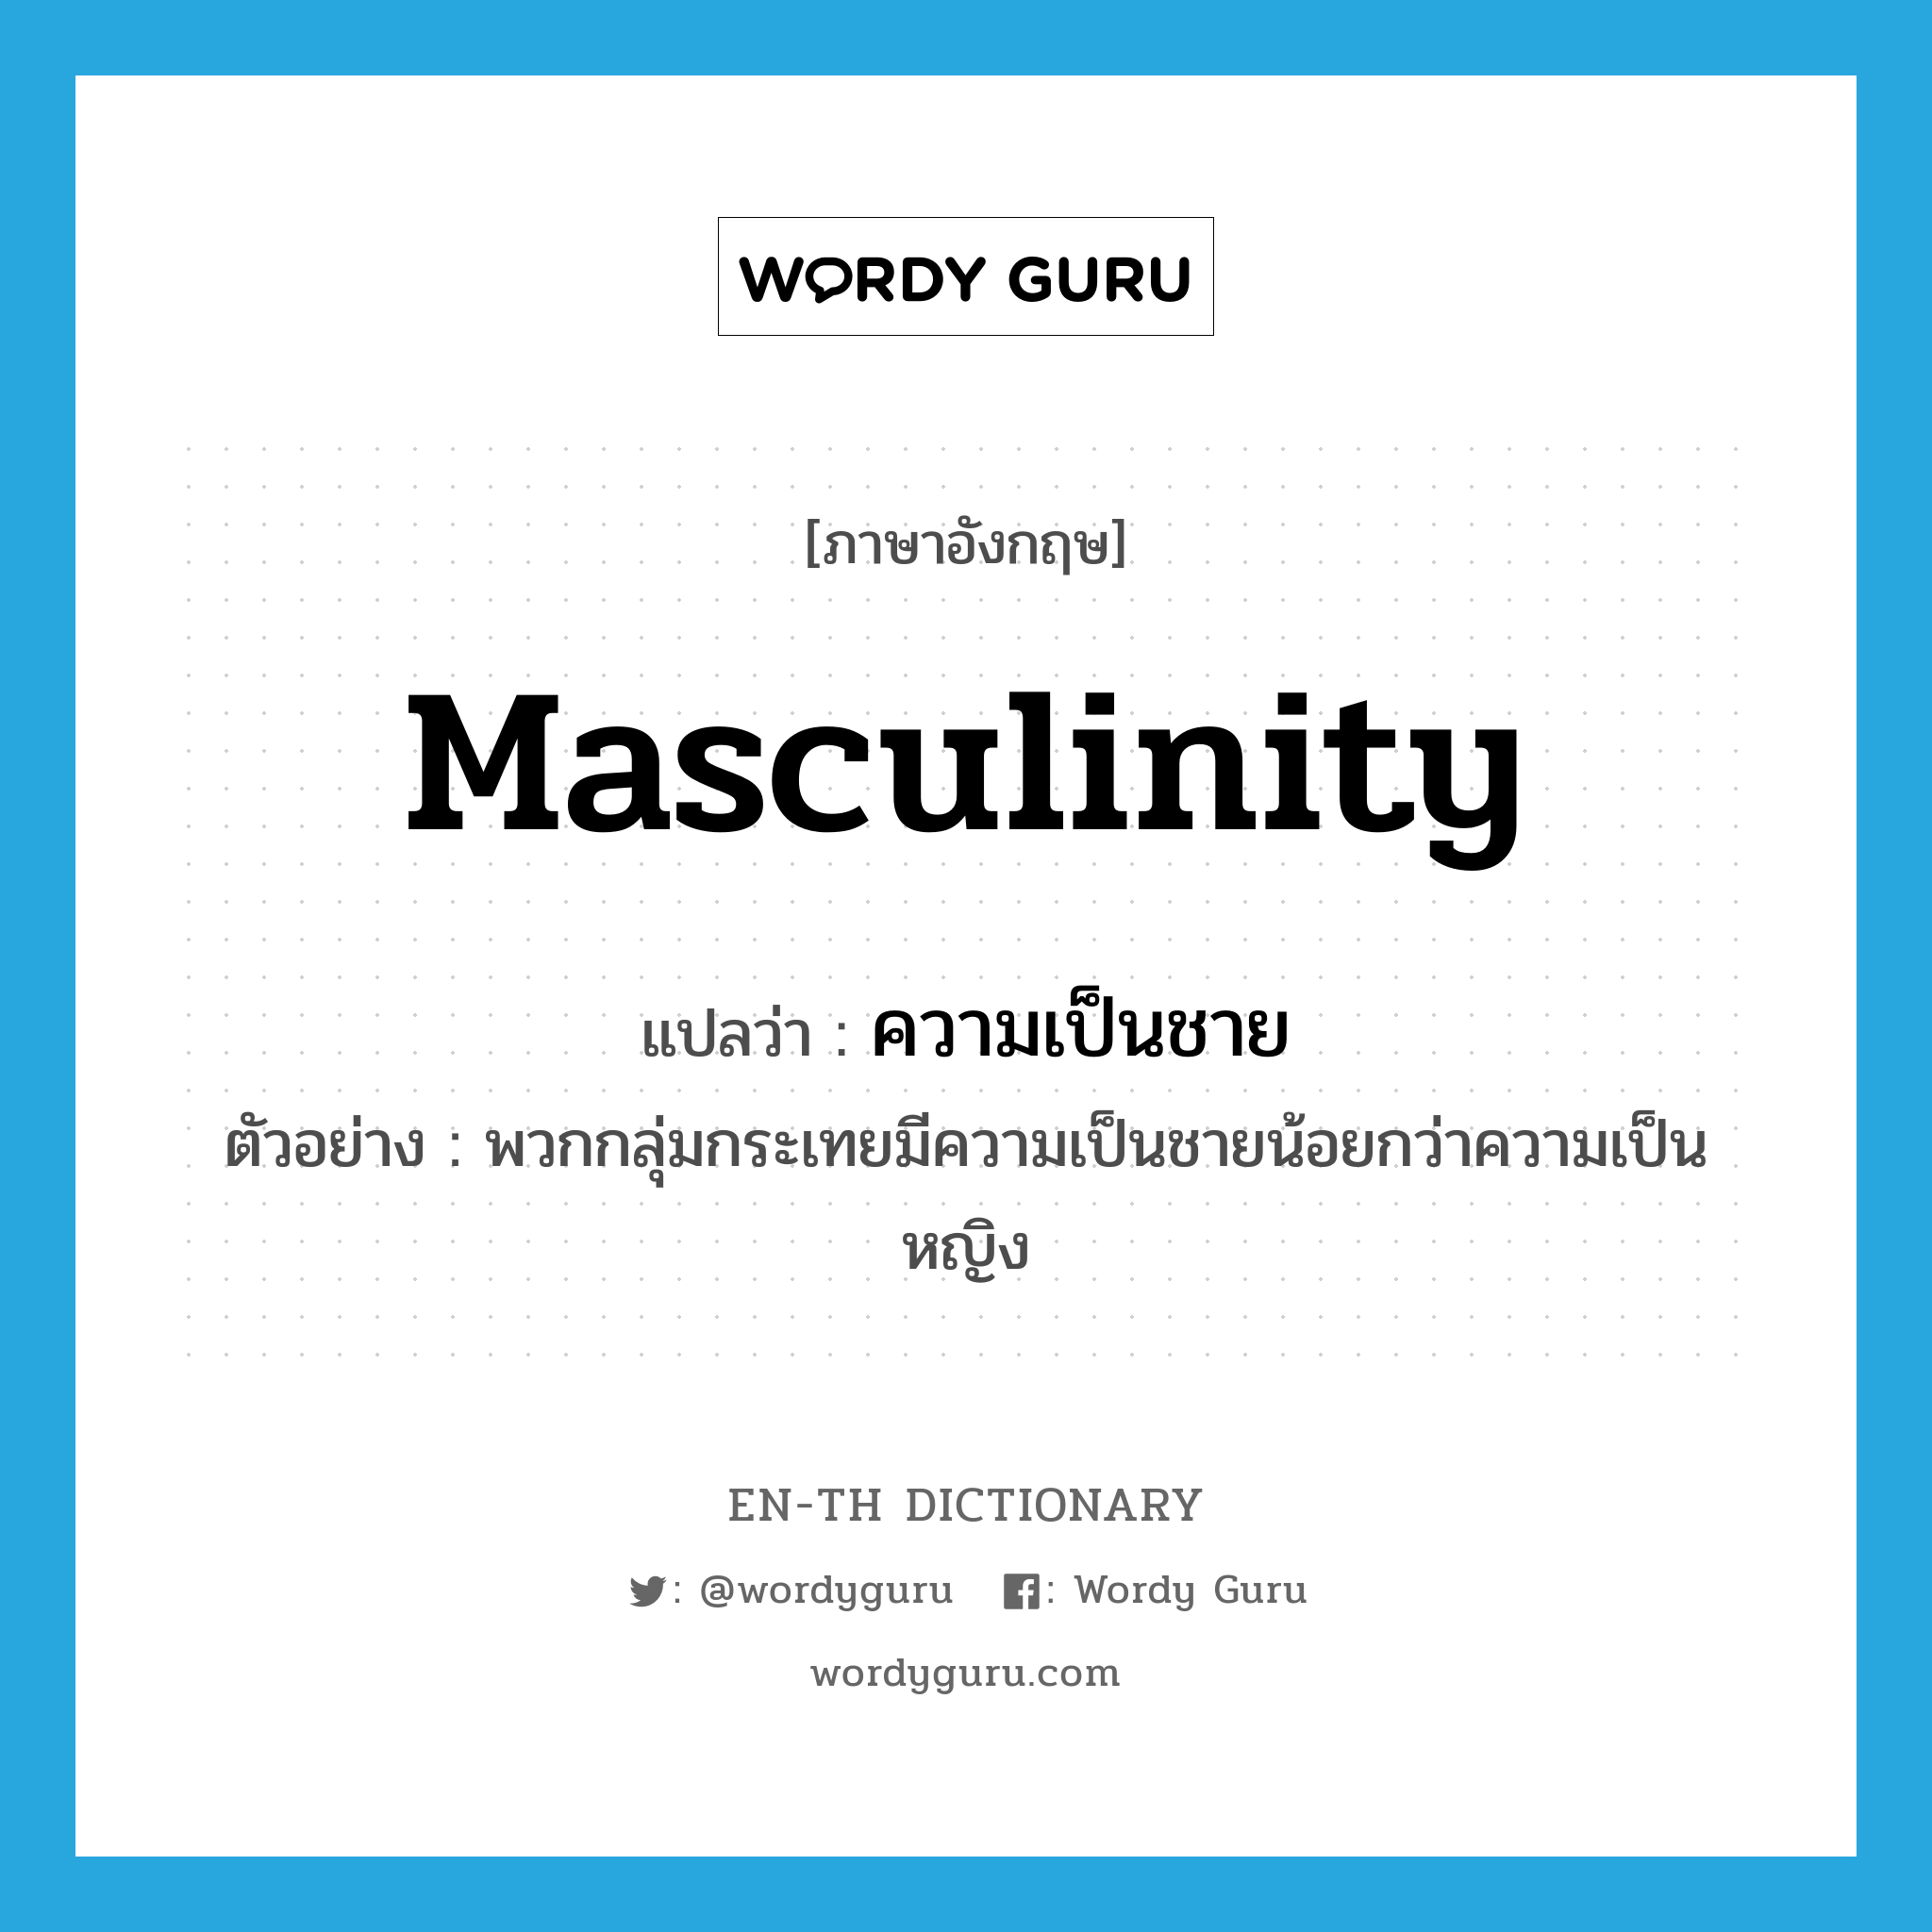 ความเป็นชาย ภาษาอังกฤษ?, คำศัพท์ภาษาอังกฤษ ความเป็นชาย แปลว่า masculinity ประเภท N ตัวอย่าง พวกกลุ่มกระเทยมีความเป็นชายน้อยกว่าความเป็นหญิง หมวด N